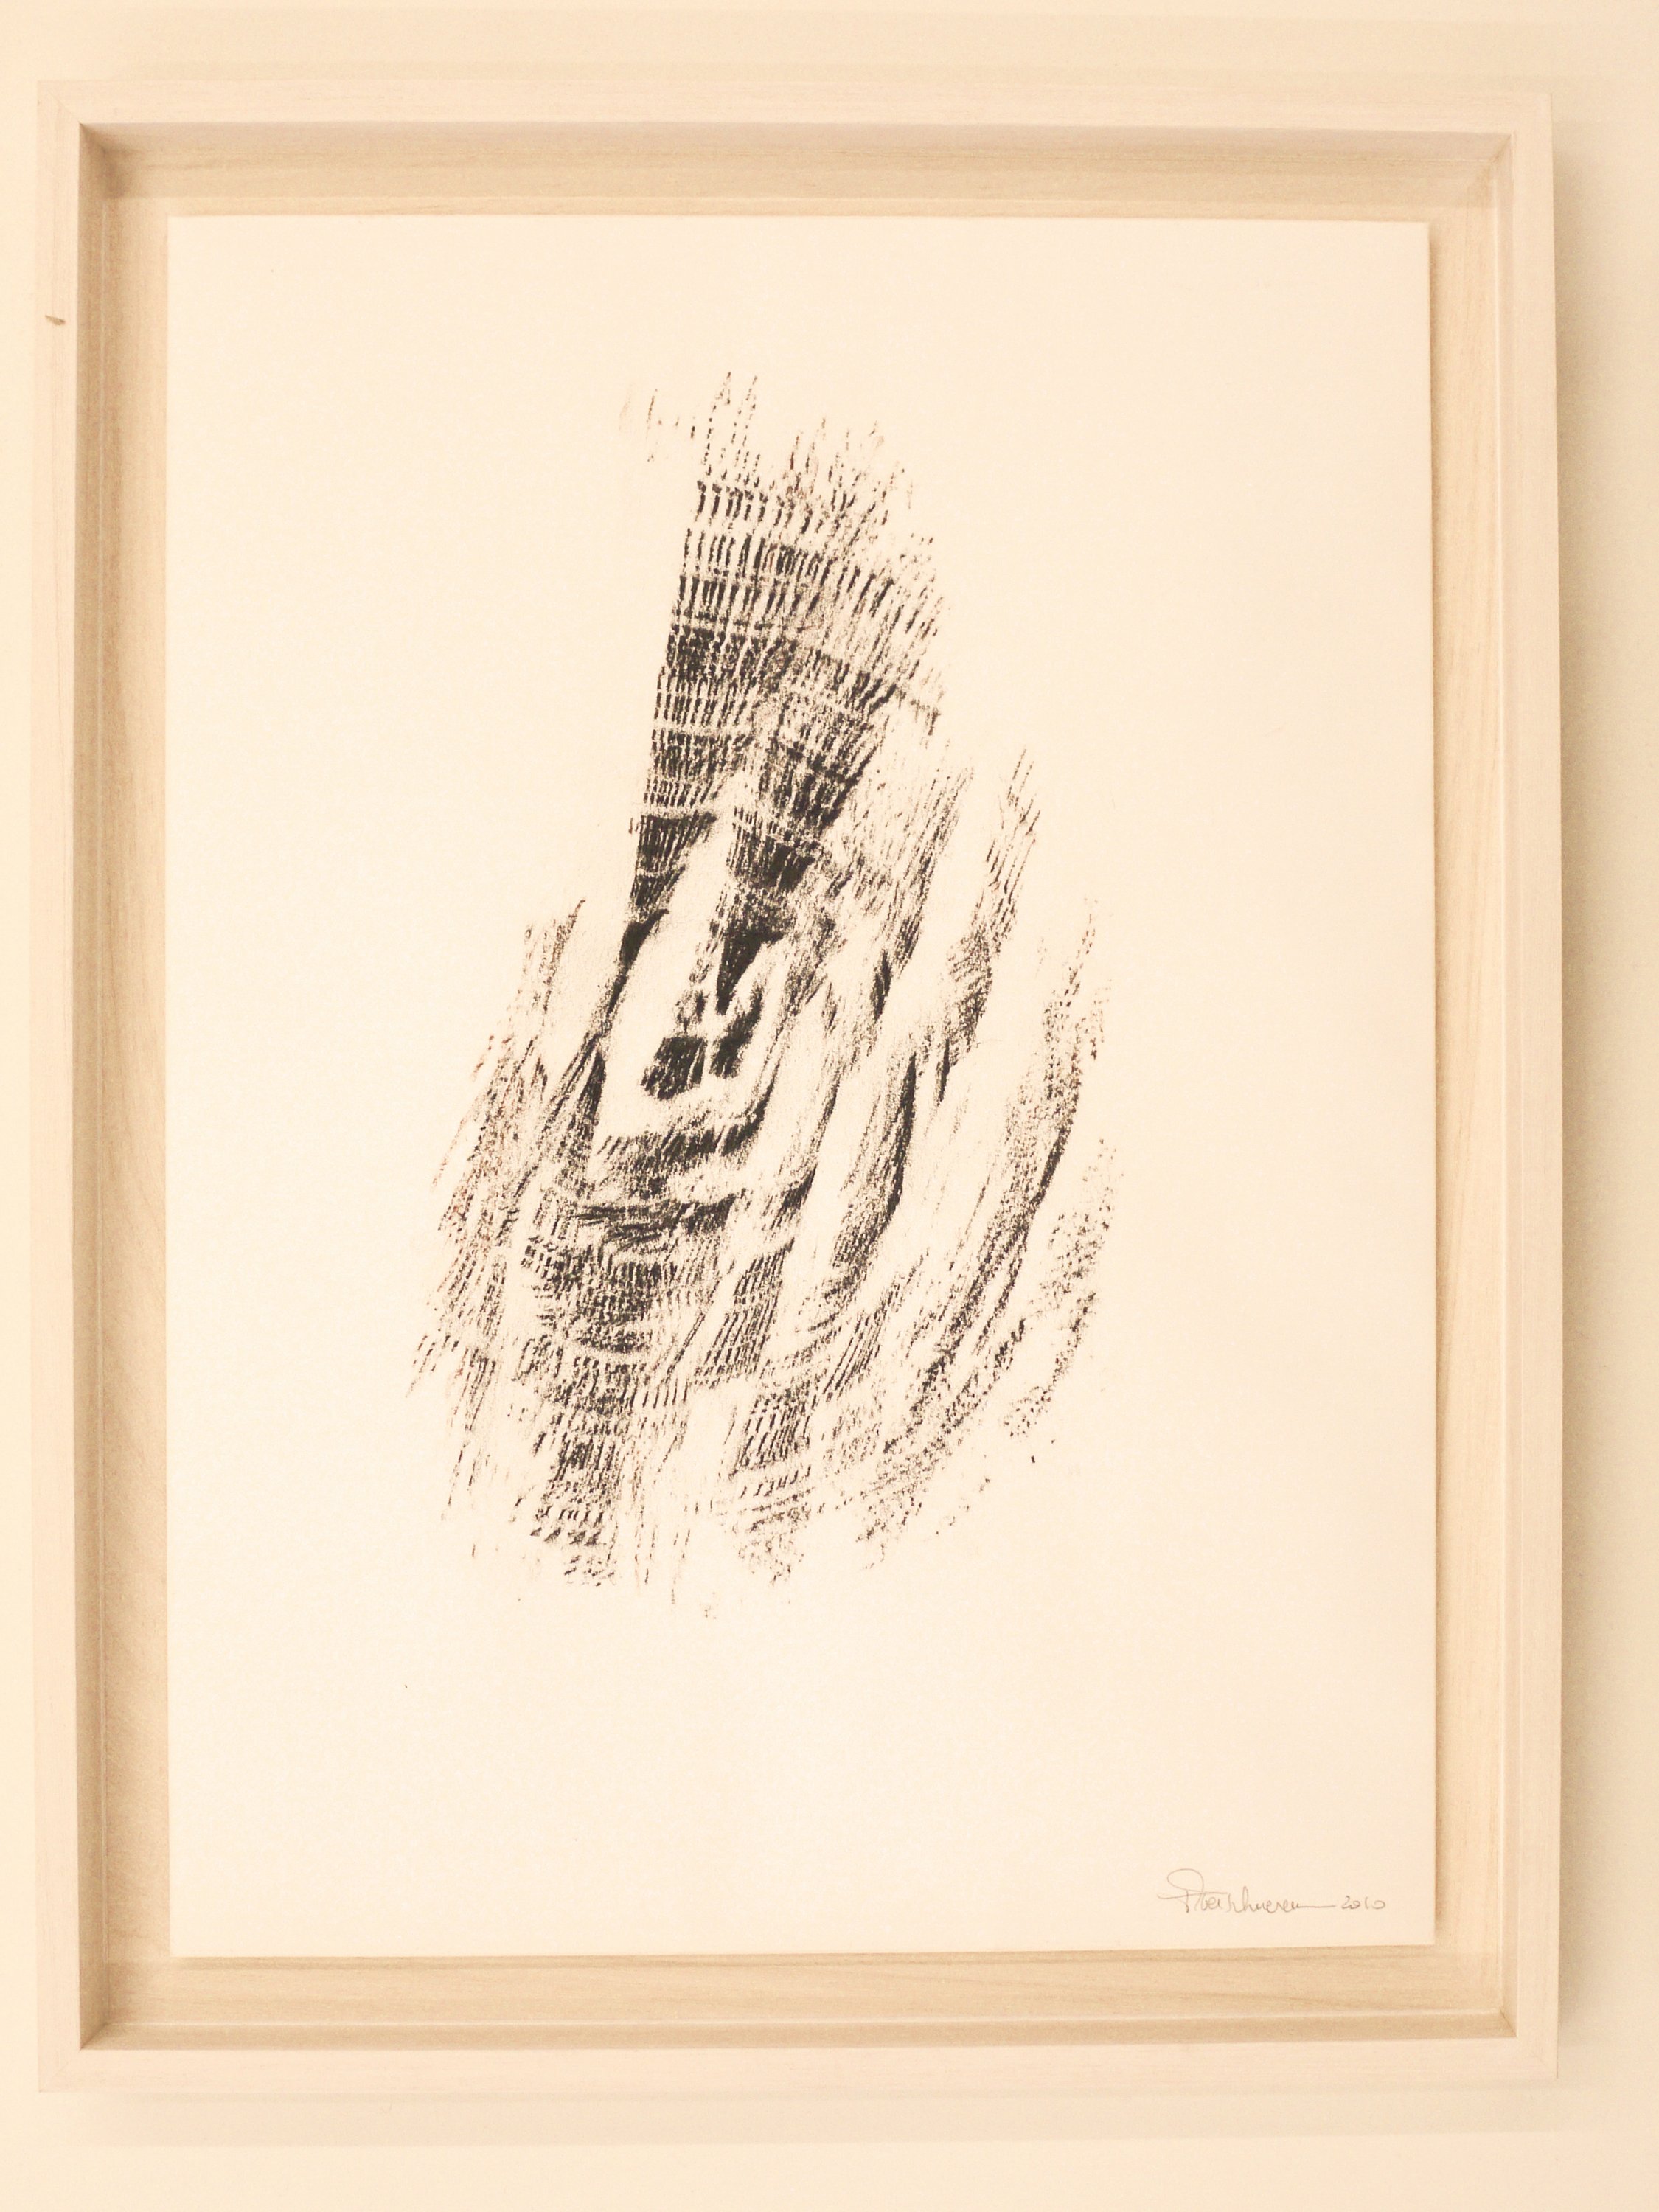 Bob Verschueren, ST (frottage), 2010, Frottage con carboncillo en tronco de roble sobre papel, 40x30 cm, 690 €